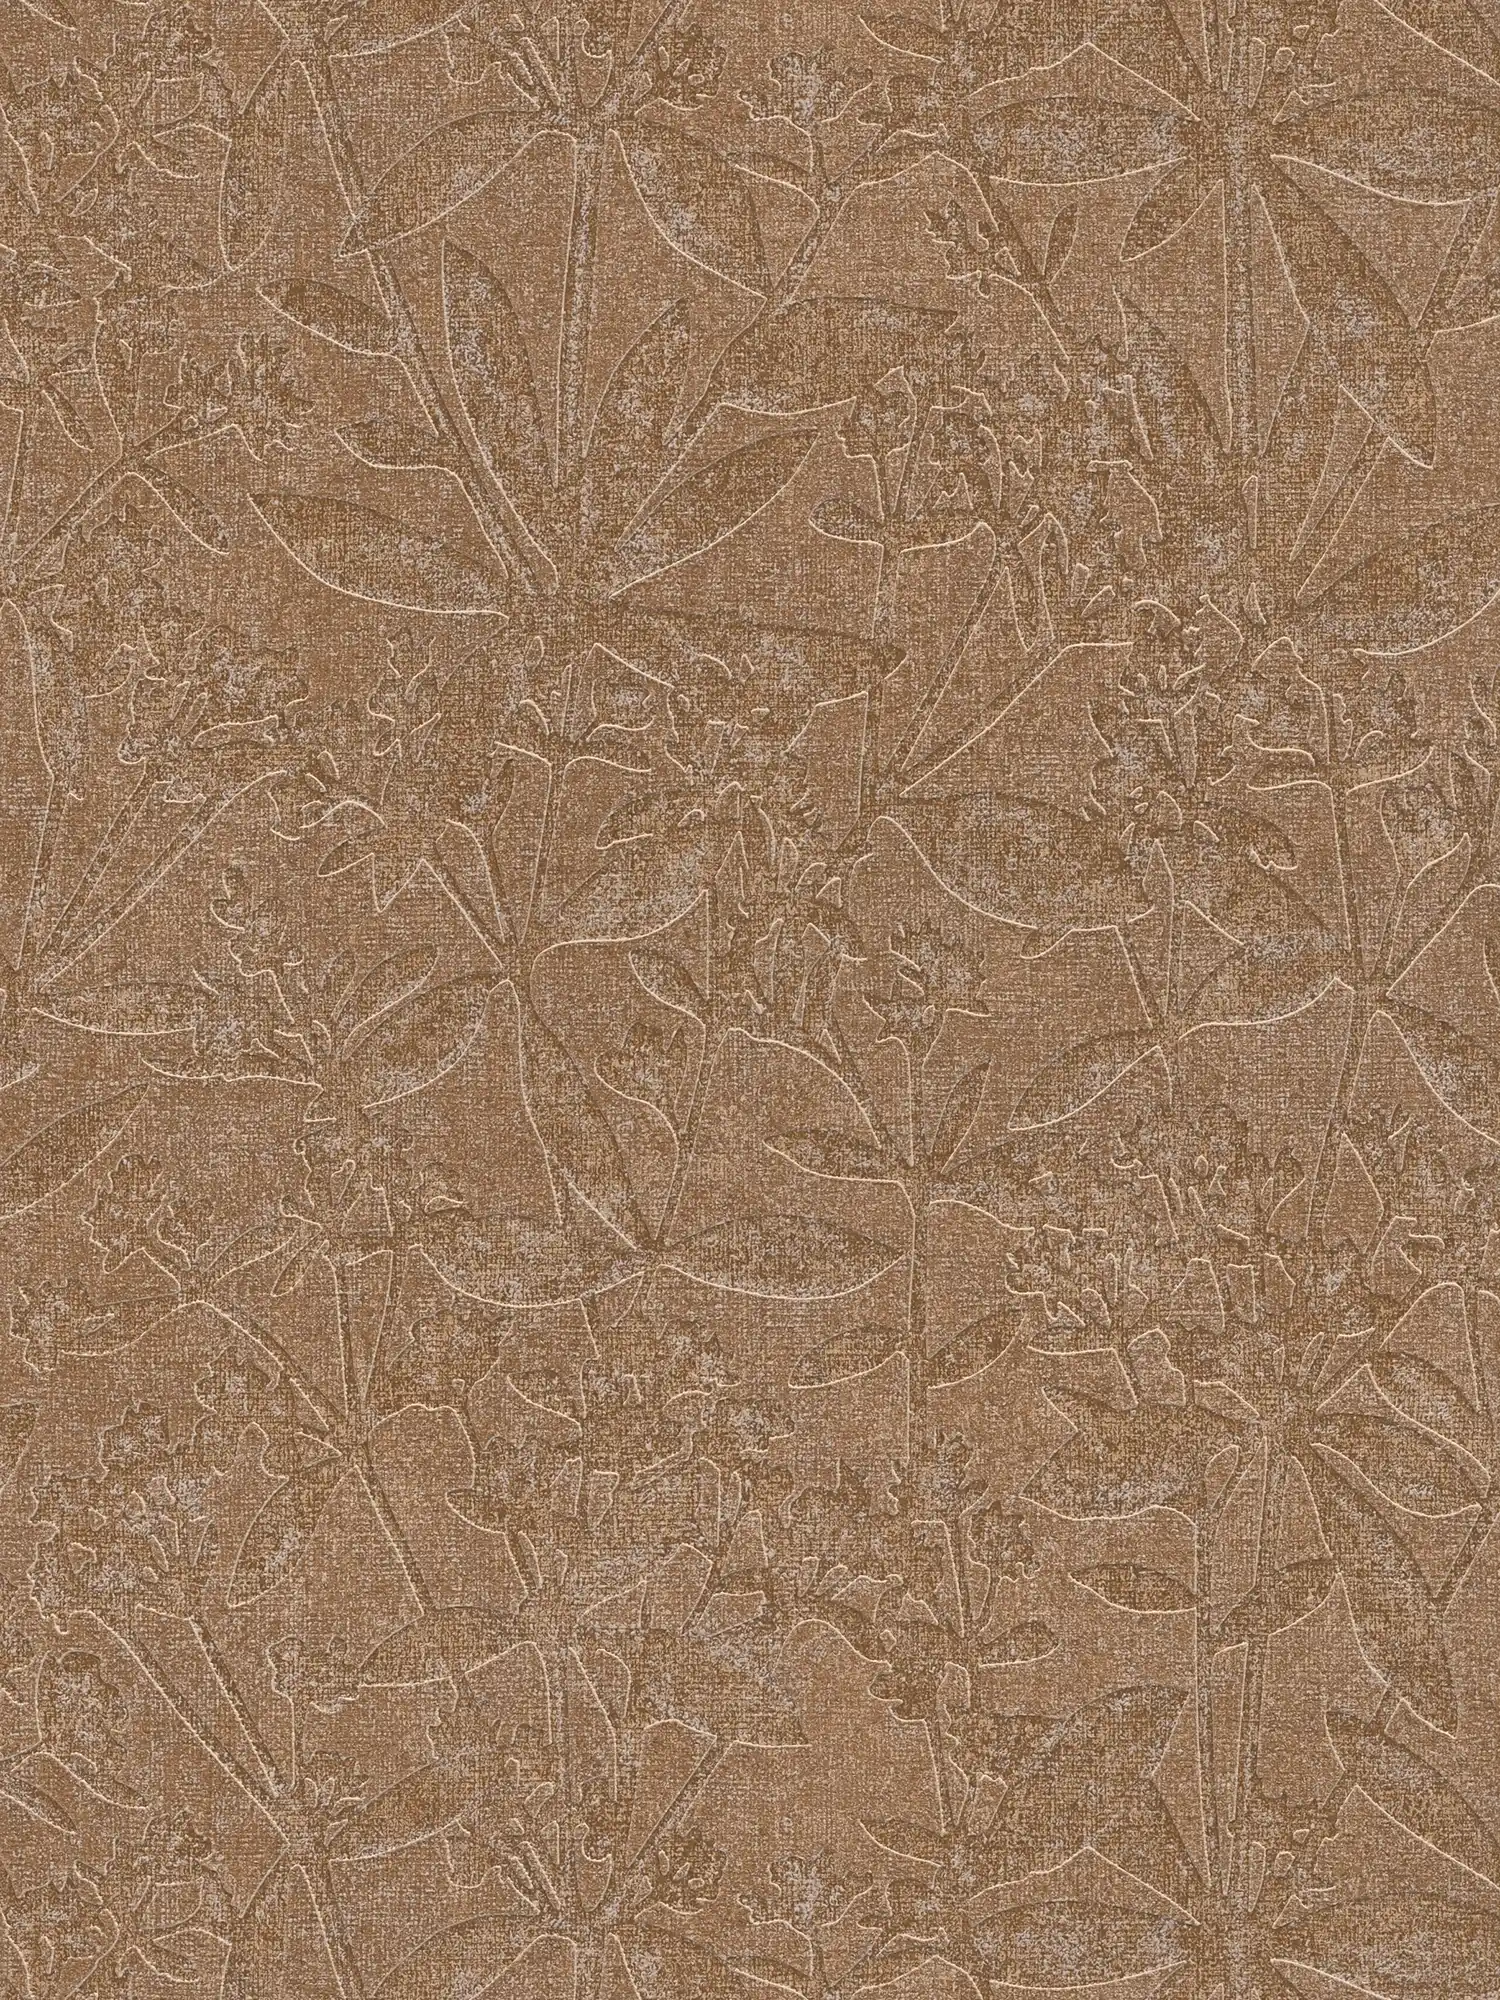 Papel pintado no tejido de flores y hojas - marrón, beige
